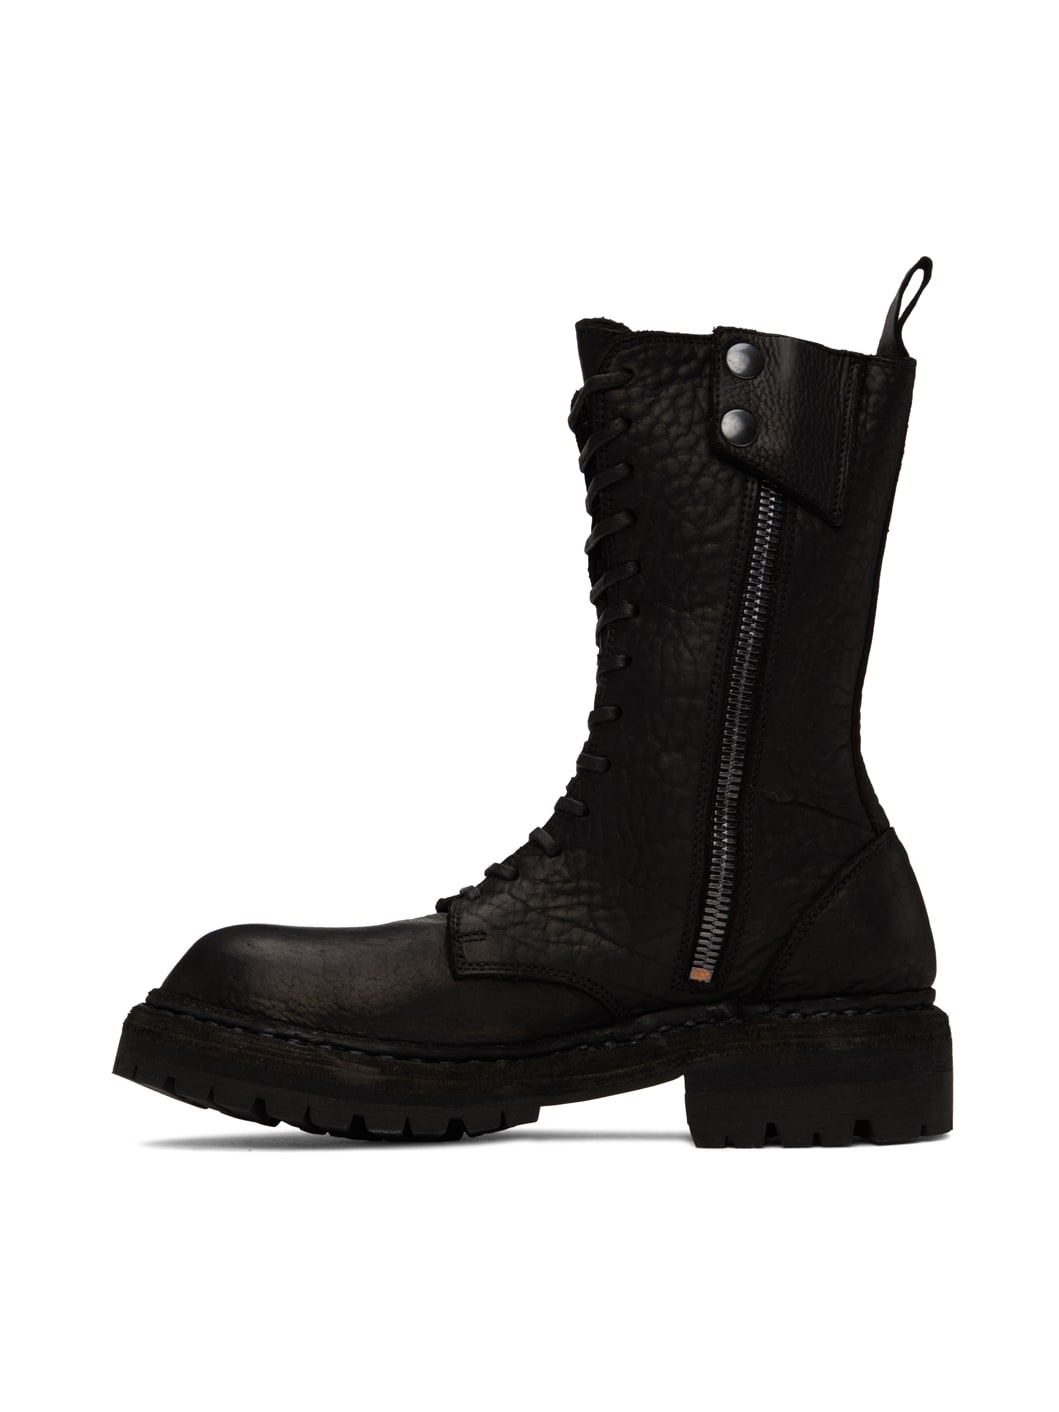 Black StyleZeitgeist Edition ER01V Boots - 3